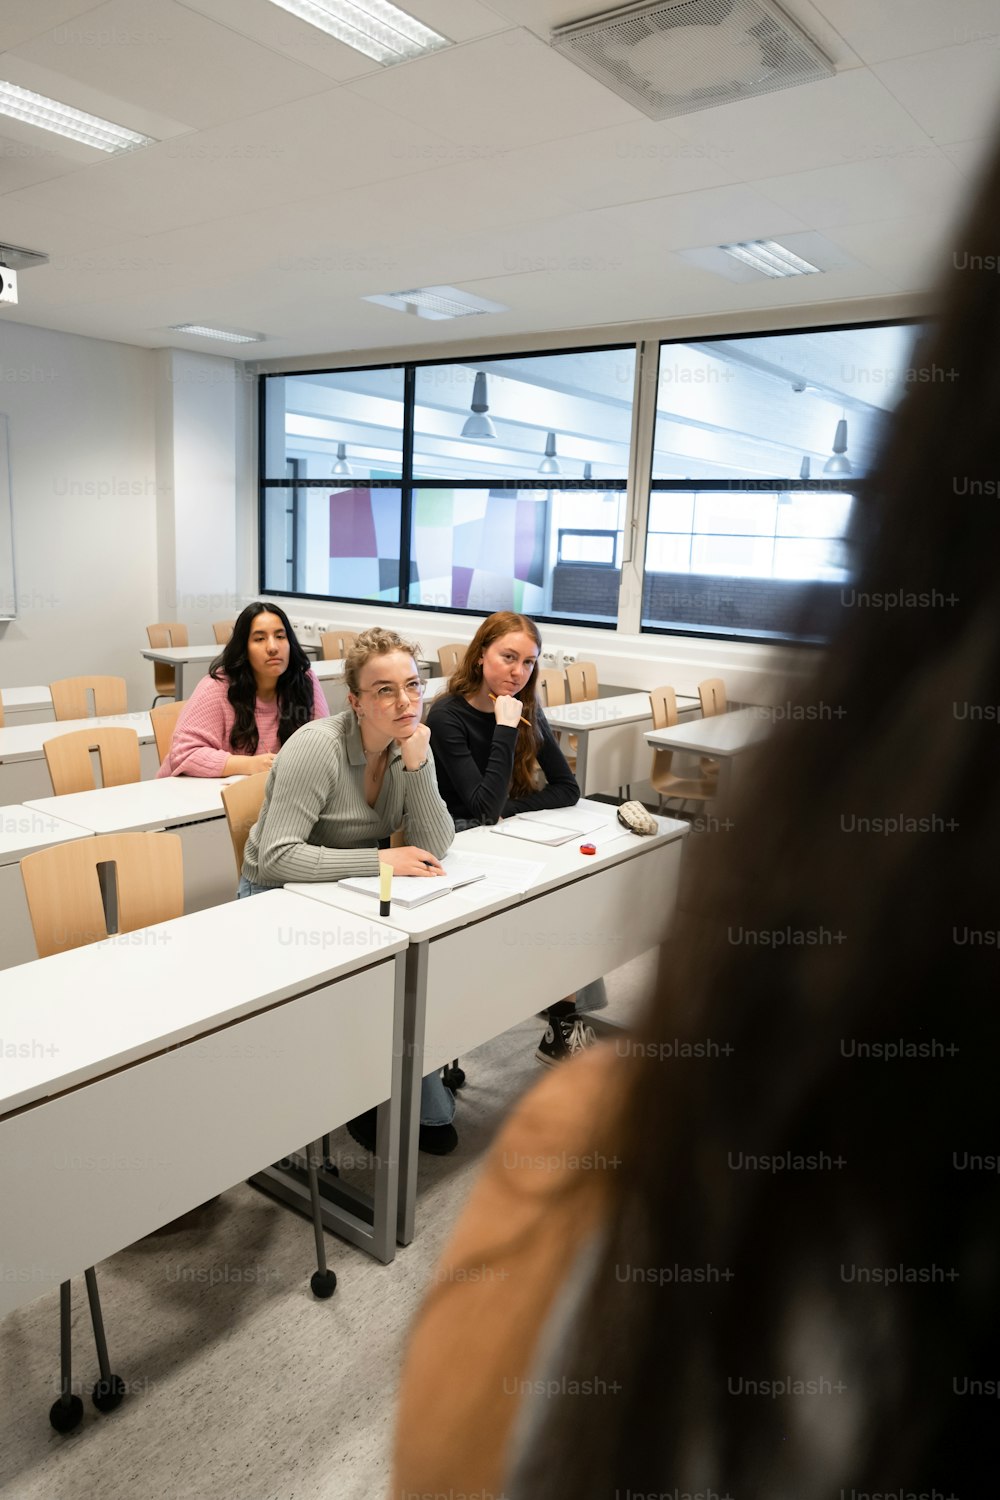 un groupe de personnes assises à des bureaux dans une salle de classe